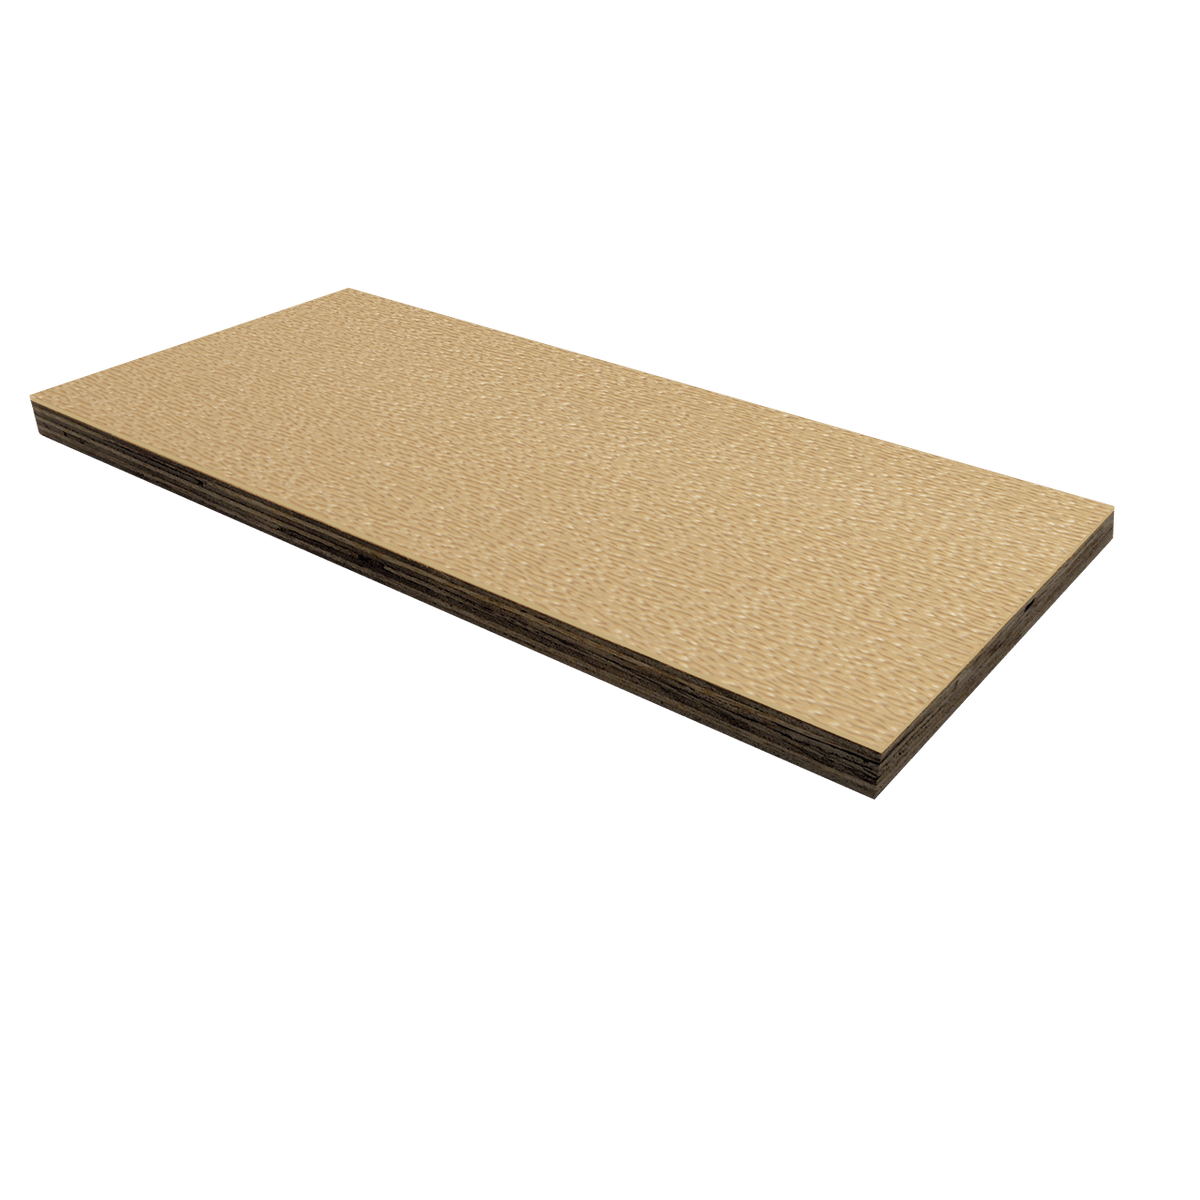 1/2" Birch Plywood Laminate - Desert Tan